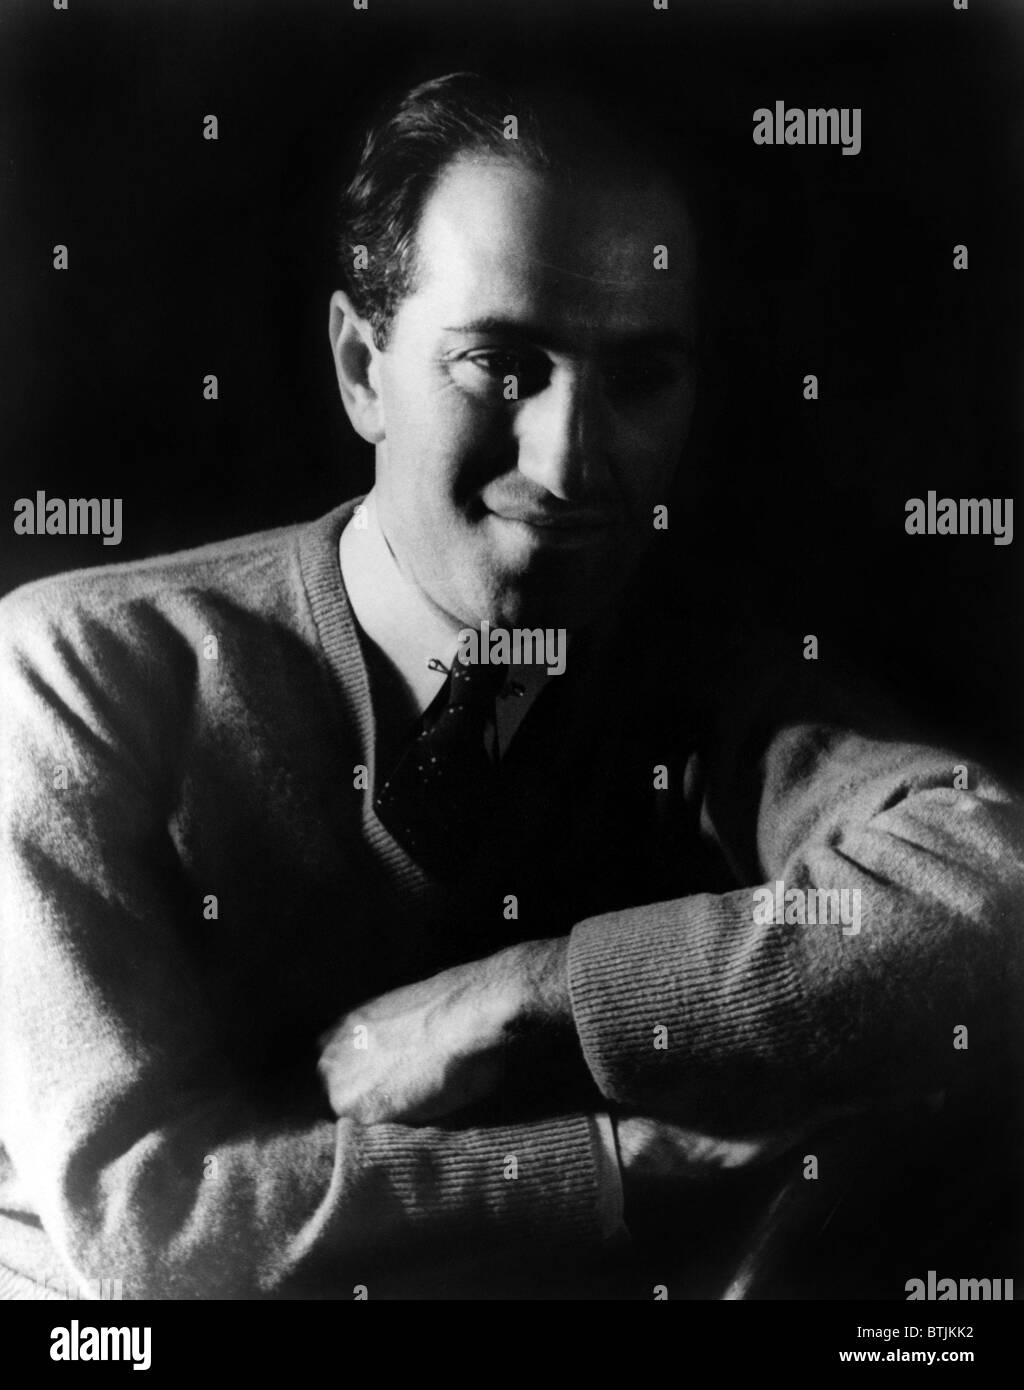 George Gershwin (1898-1937), compositore americano, ritratto da Carl Van Vechten, 28 marzo 1937. Foto Stock